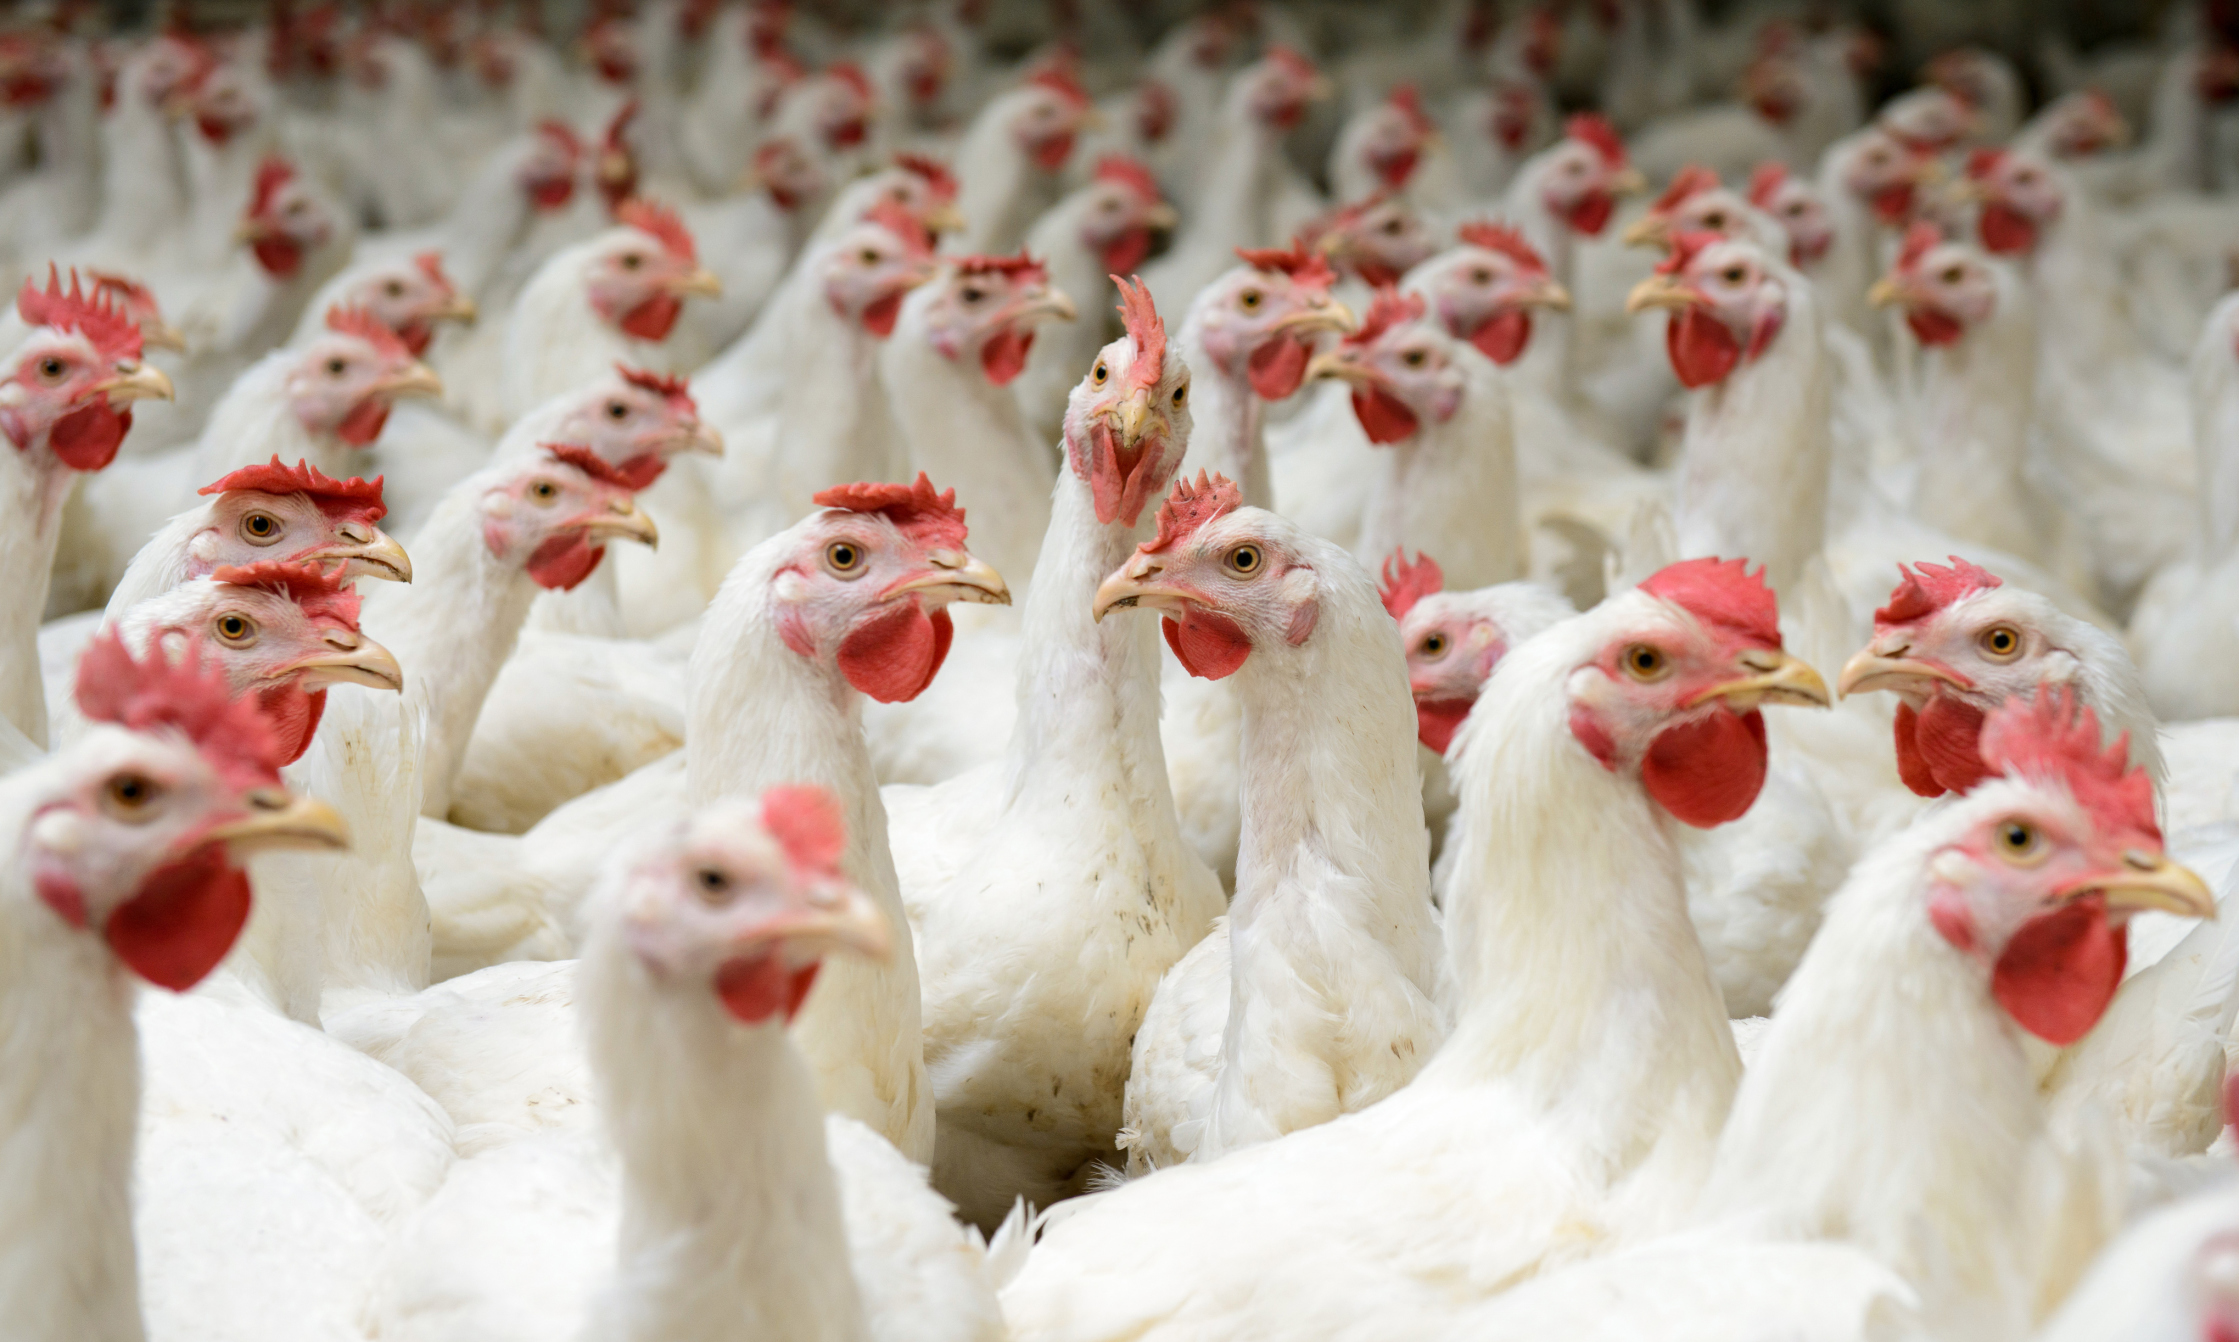 کشف حدود ۱۶ هزار قطعه مرغ زنده فاقد مجوز در ابهر